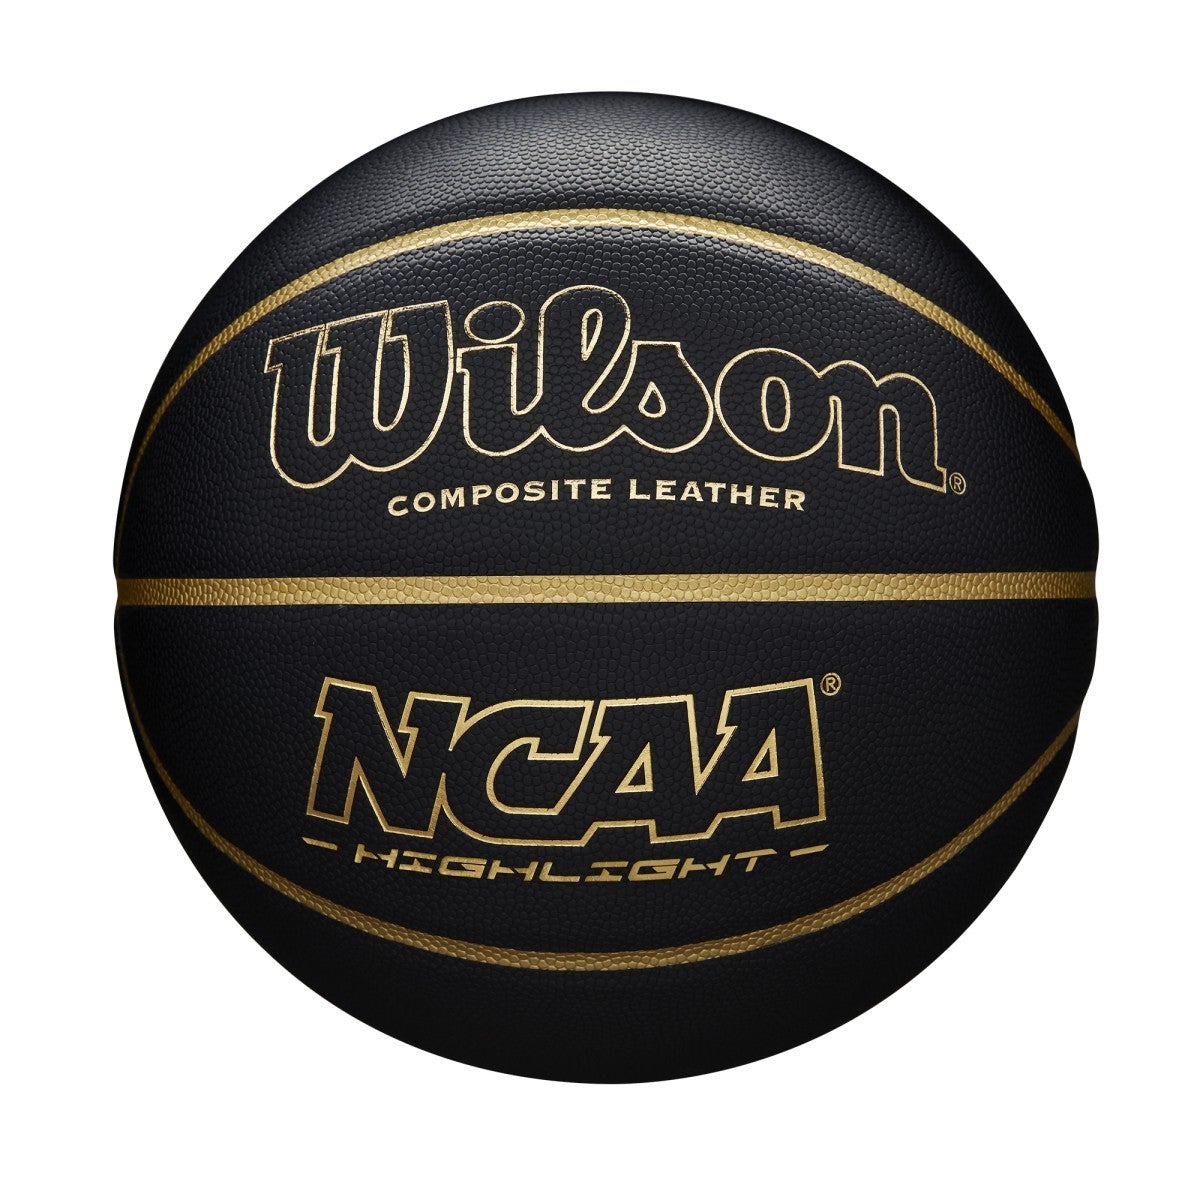 WILSON basketbola bumba NCAA HIGHLIGHT Game ball bumba